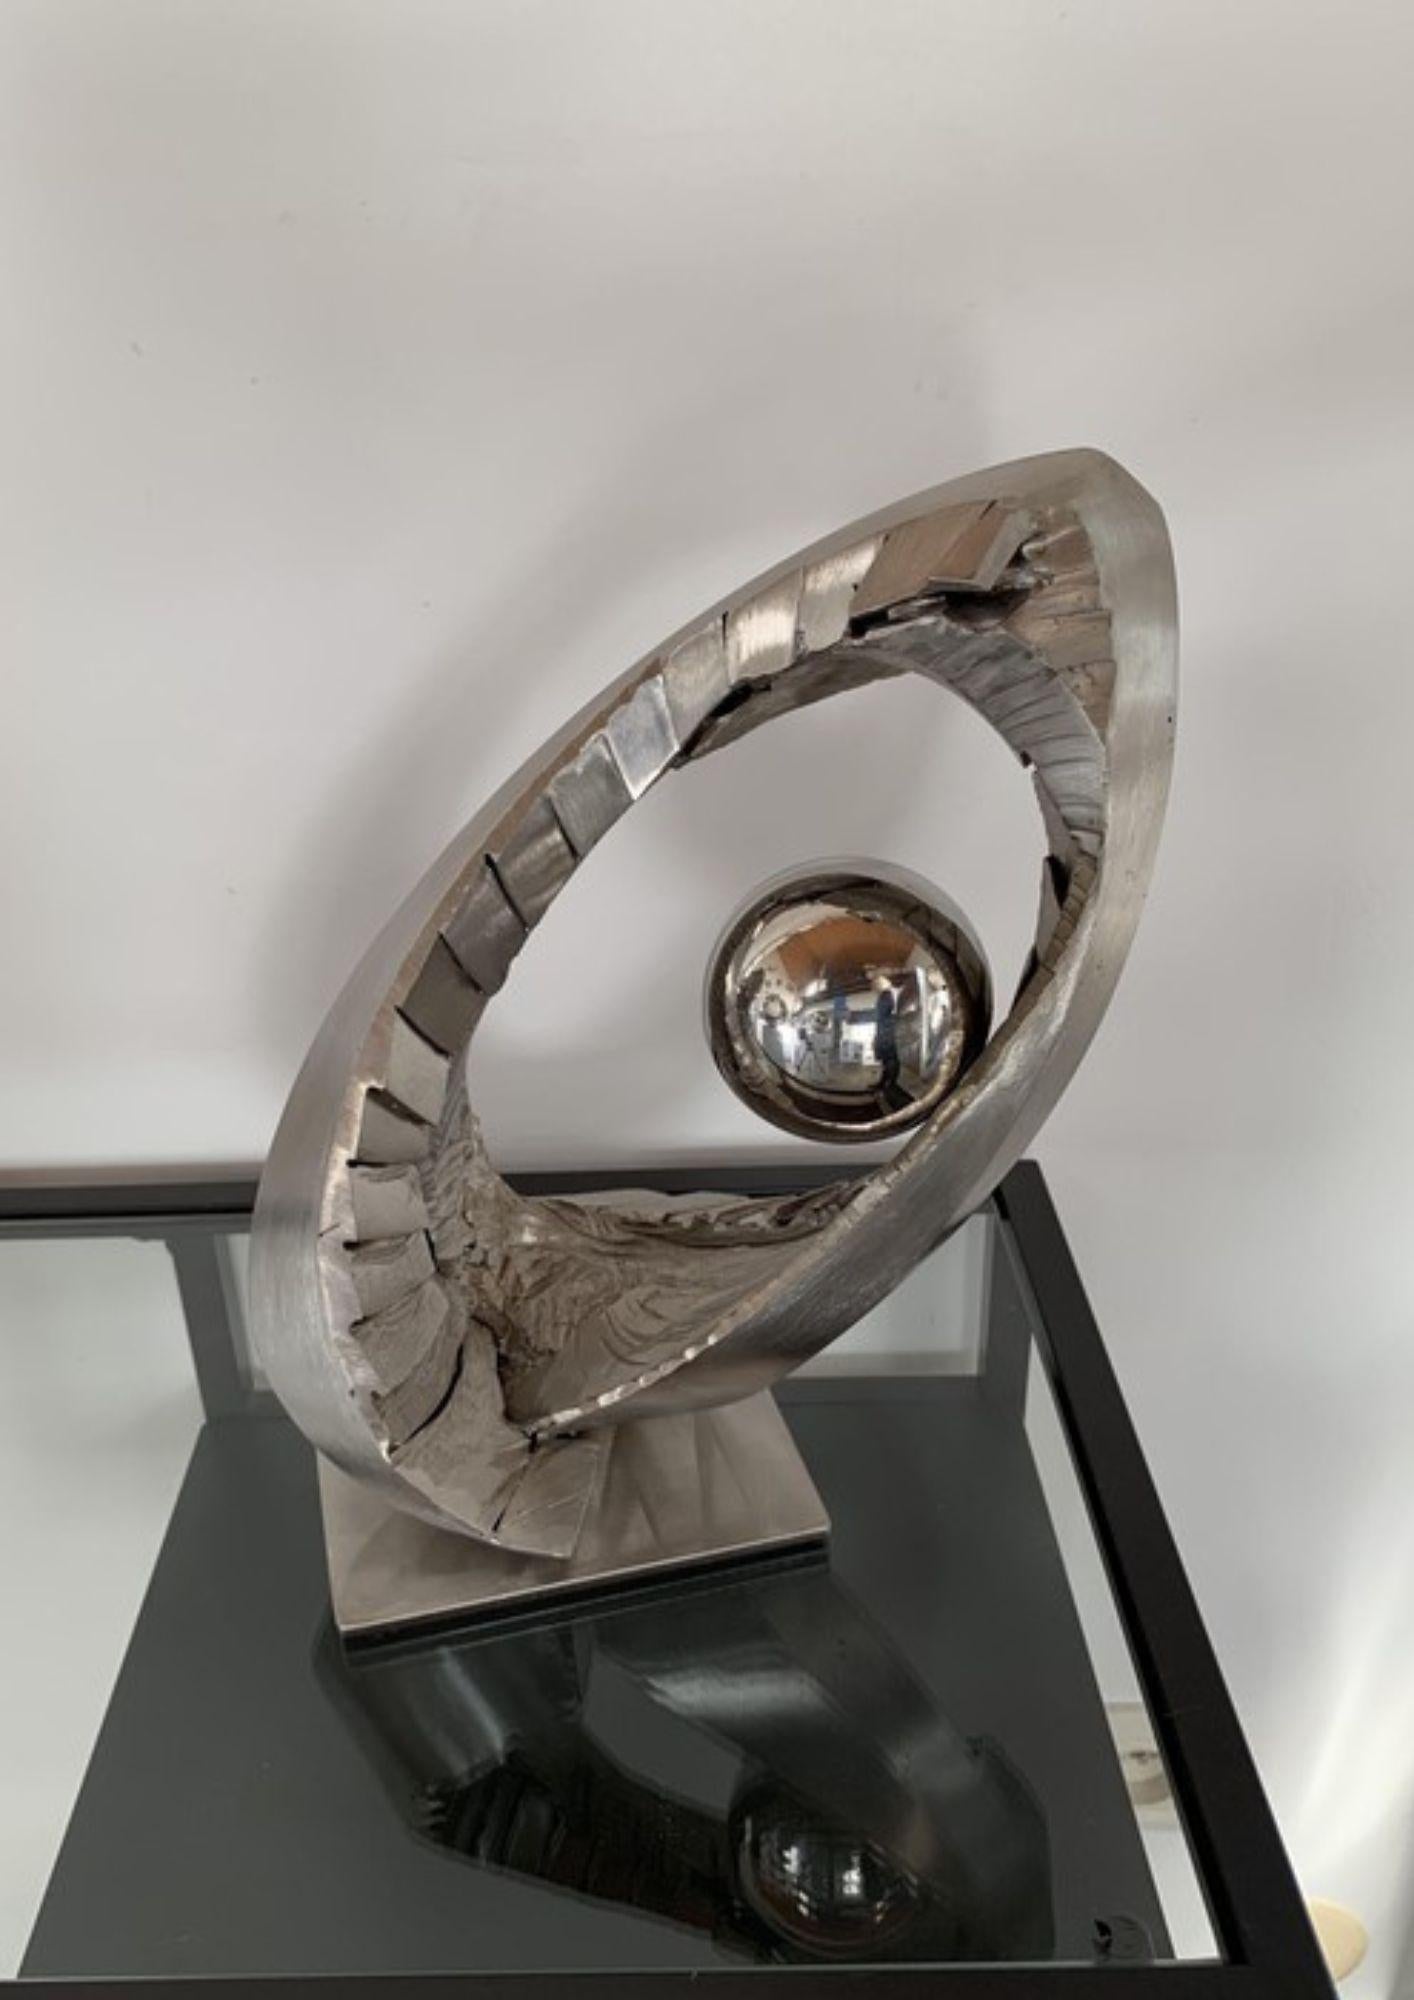 Die Skulptur Mobius 4 ist ein Werk, das die Konzepte von Zirkulation, Torsion und Bewegung durch den Möbiusring erforscht. Der Künstler lässt sich von dieser faszinierenden mathematischen Figur inspirieren, um eine Skulptur zu schaffen, die die